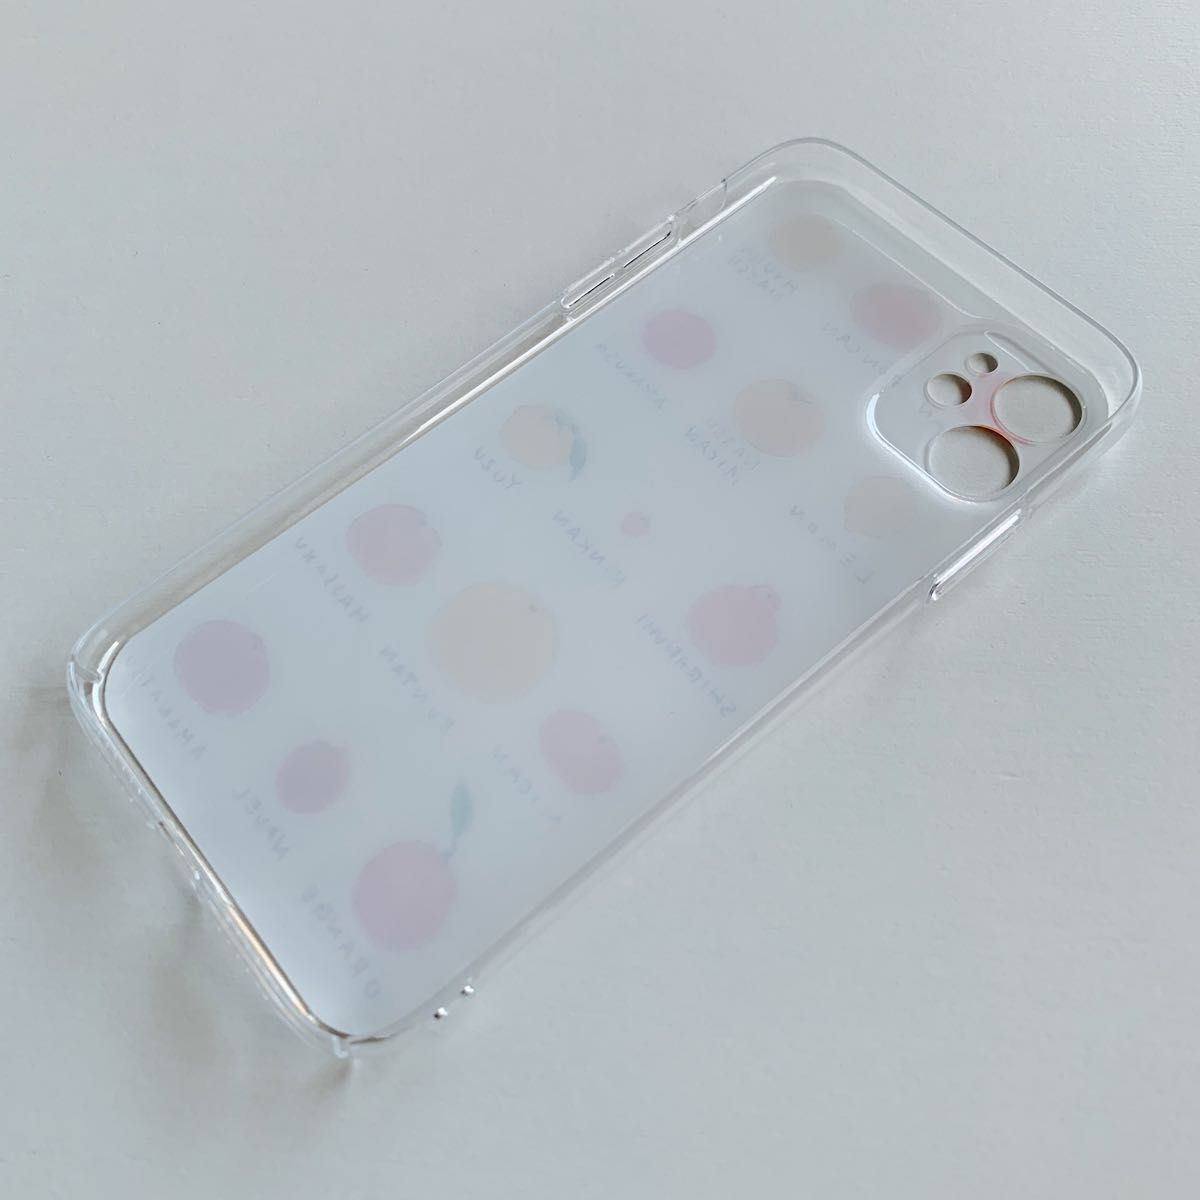 iPhone11pro スマホケース みかん 透明 韓国 クリアケース